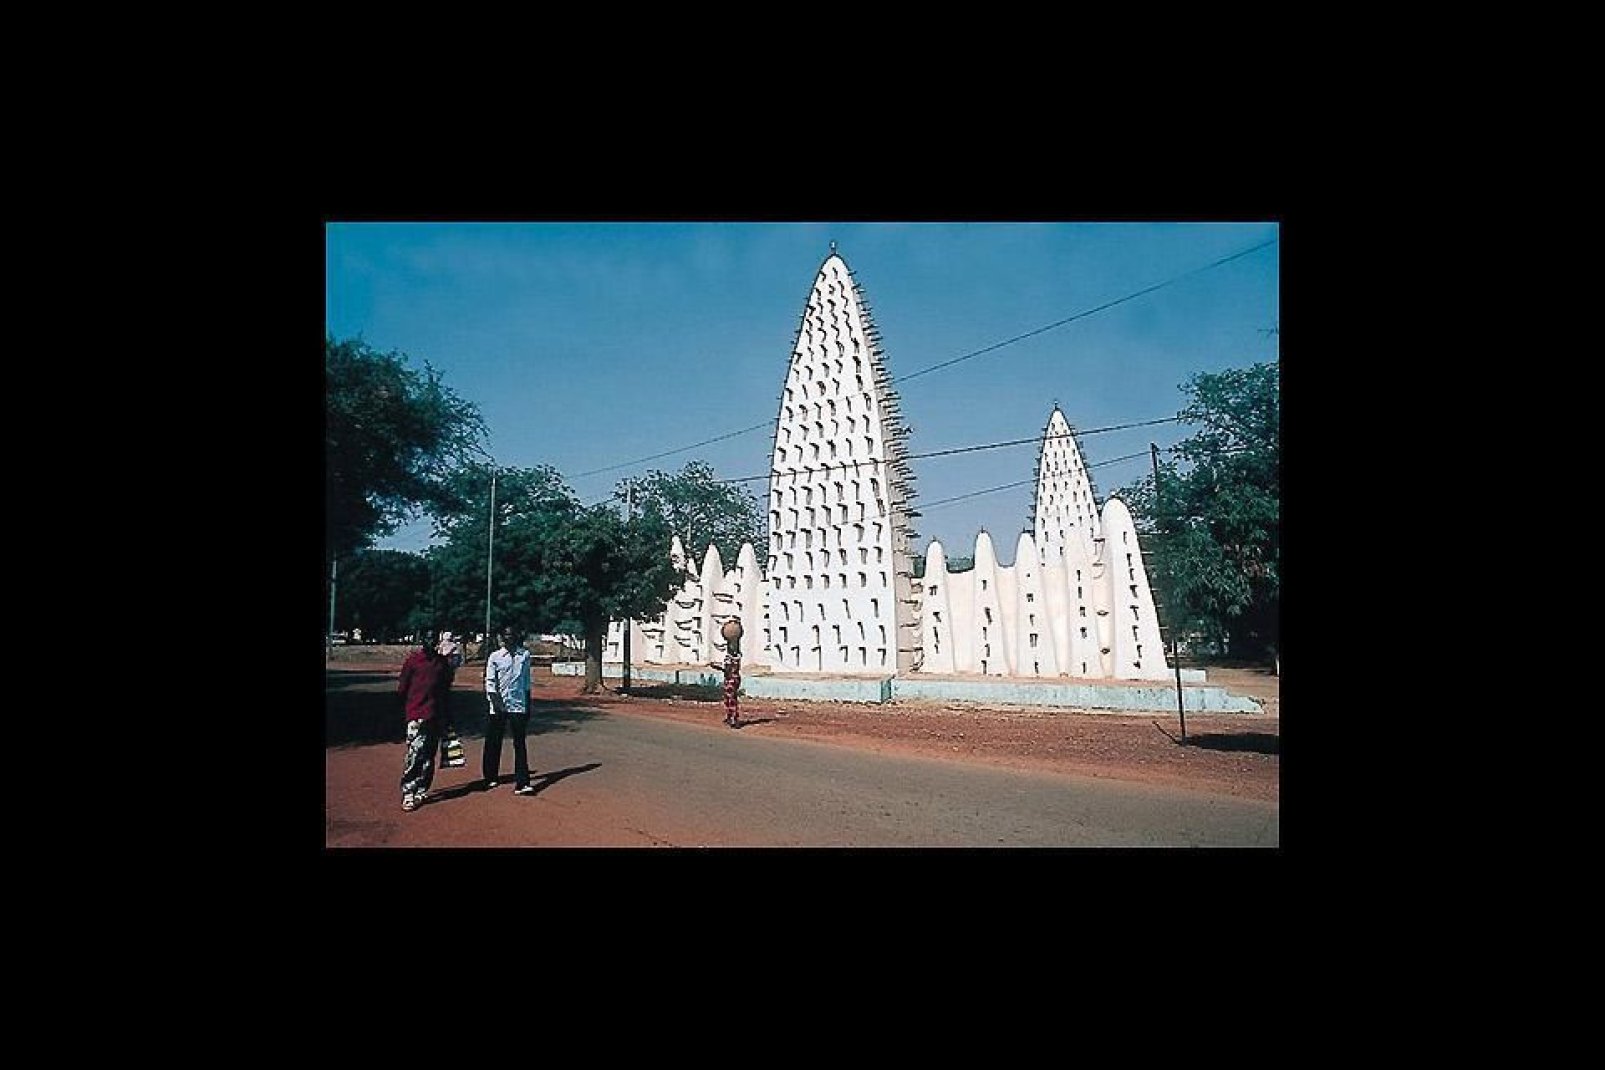 Bobo-Dioulasso se encuentra al sudoeste del país, y es la segunda ciudad más importante después de la capital.